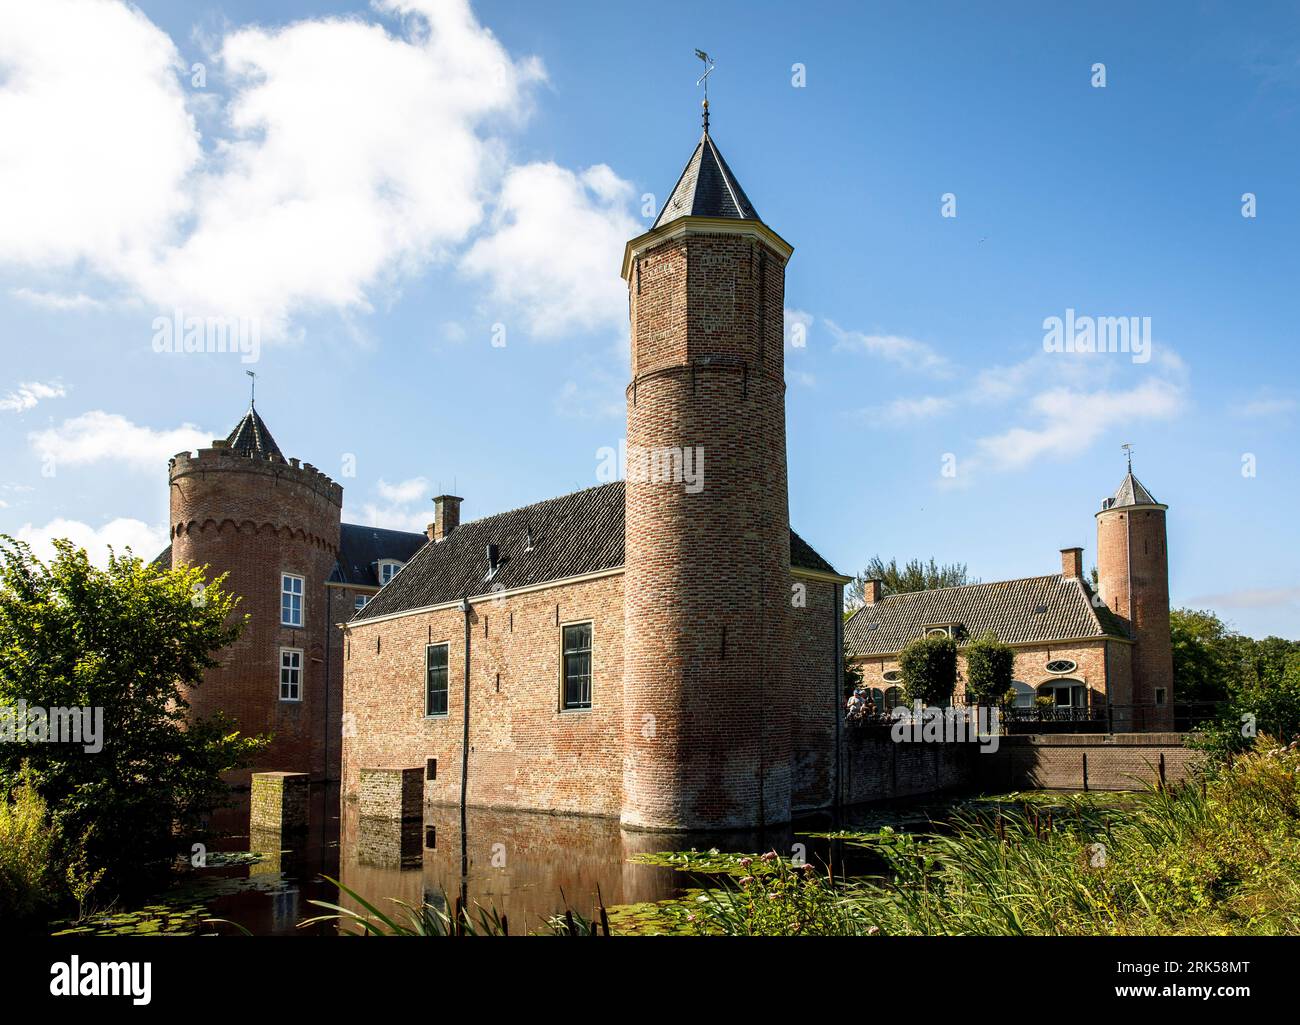 château Westhove près de Domburg sur la péninsule Walcheren, Zélande, pays-Bas. Schloss Westhove BEI Domburg auf Walcheren, Zeeland, Niederlande. Banque D'Images